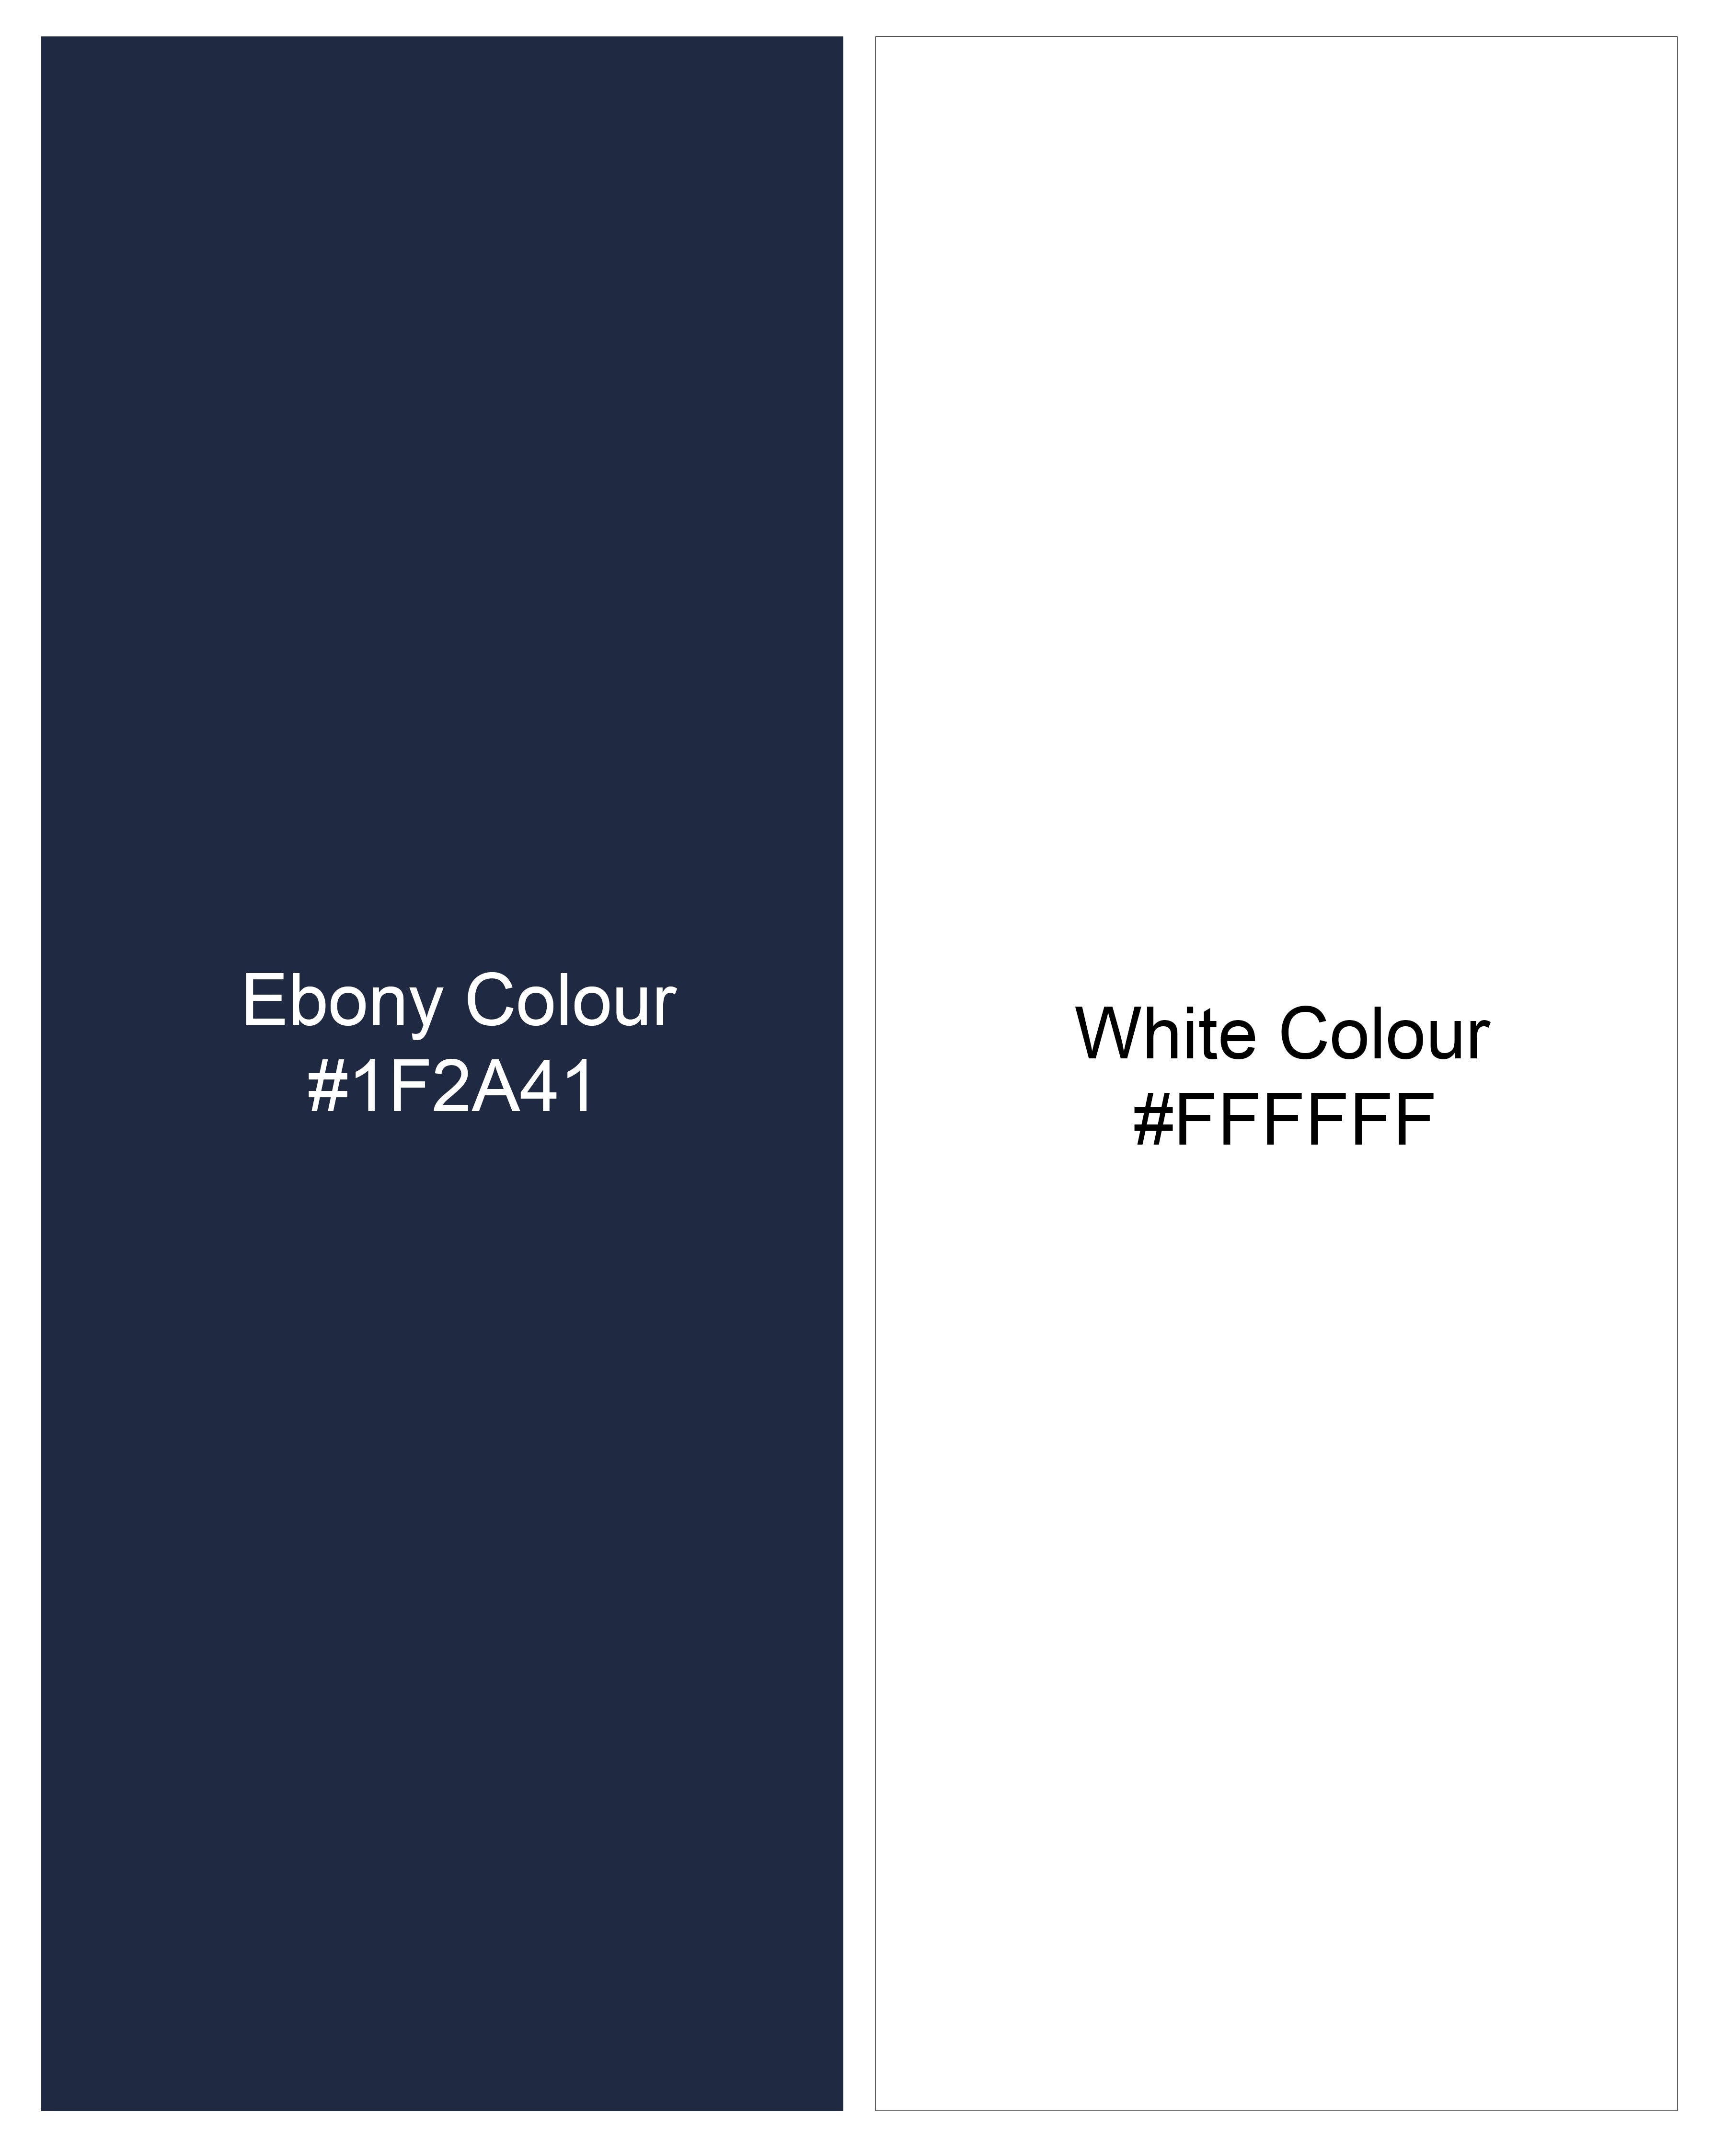 Ebony Navy Blue Striped Dobby Textured Premium Giza Cotton Shirt  8655-BD-BLE-38,8655-BD-BLE-H-38,8655-BD-BLE-39,8655-BD-BLE-H-39,8655-BD-BLE-40,8655-BD-BLE-H-40,8655-BD-BLE-42,8655-BD-BLE-H-42,8655-BD-BLE-44,8655-BD-BLE-H-44,8655-BD-BLE-46,8655-BD-BLE-H-46,8655-BD-BLE-48,8655-BD-BLE-H-48,8655-BD-BLE-50,8655-BD-BLE-H-50,8655-BD-BLE-52,8655-BD-BLE-H-52